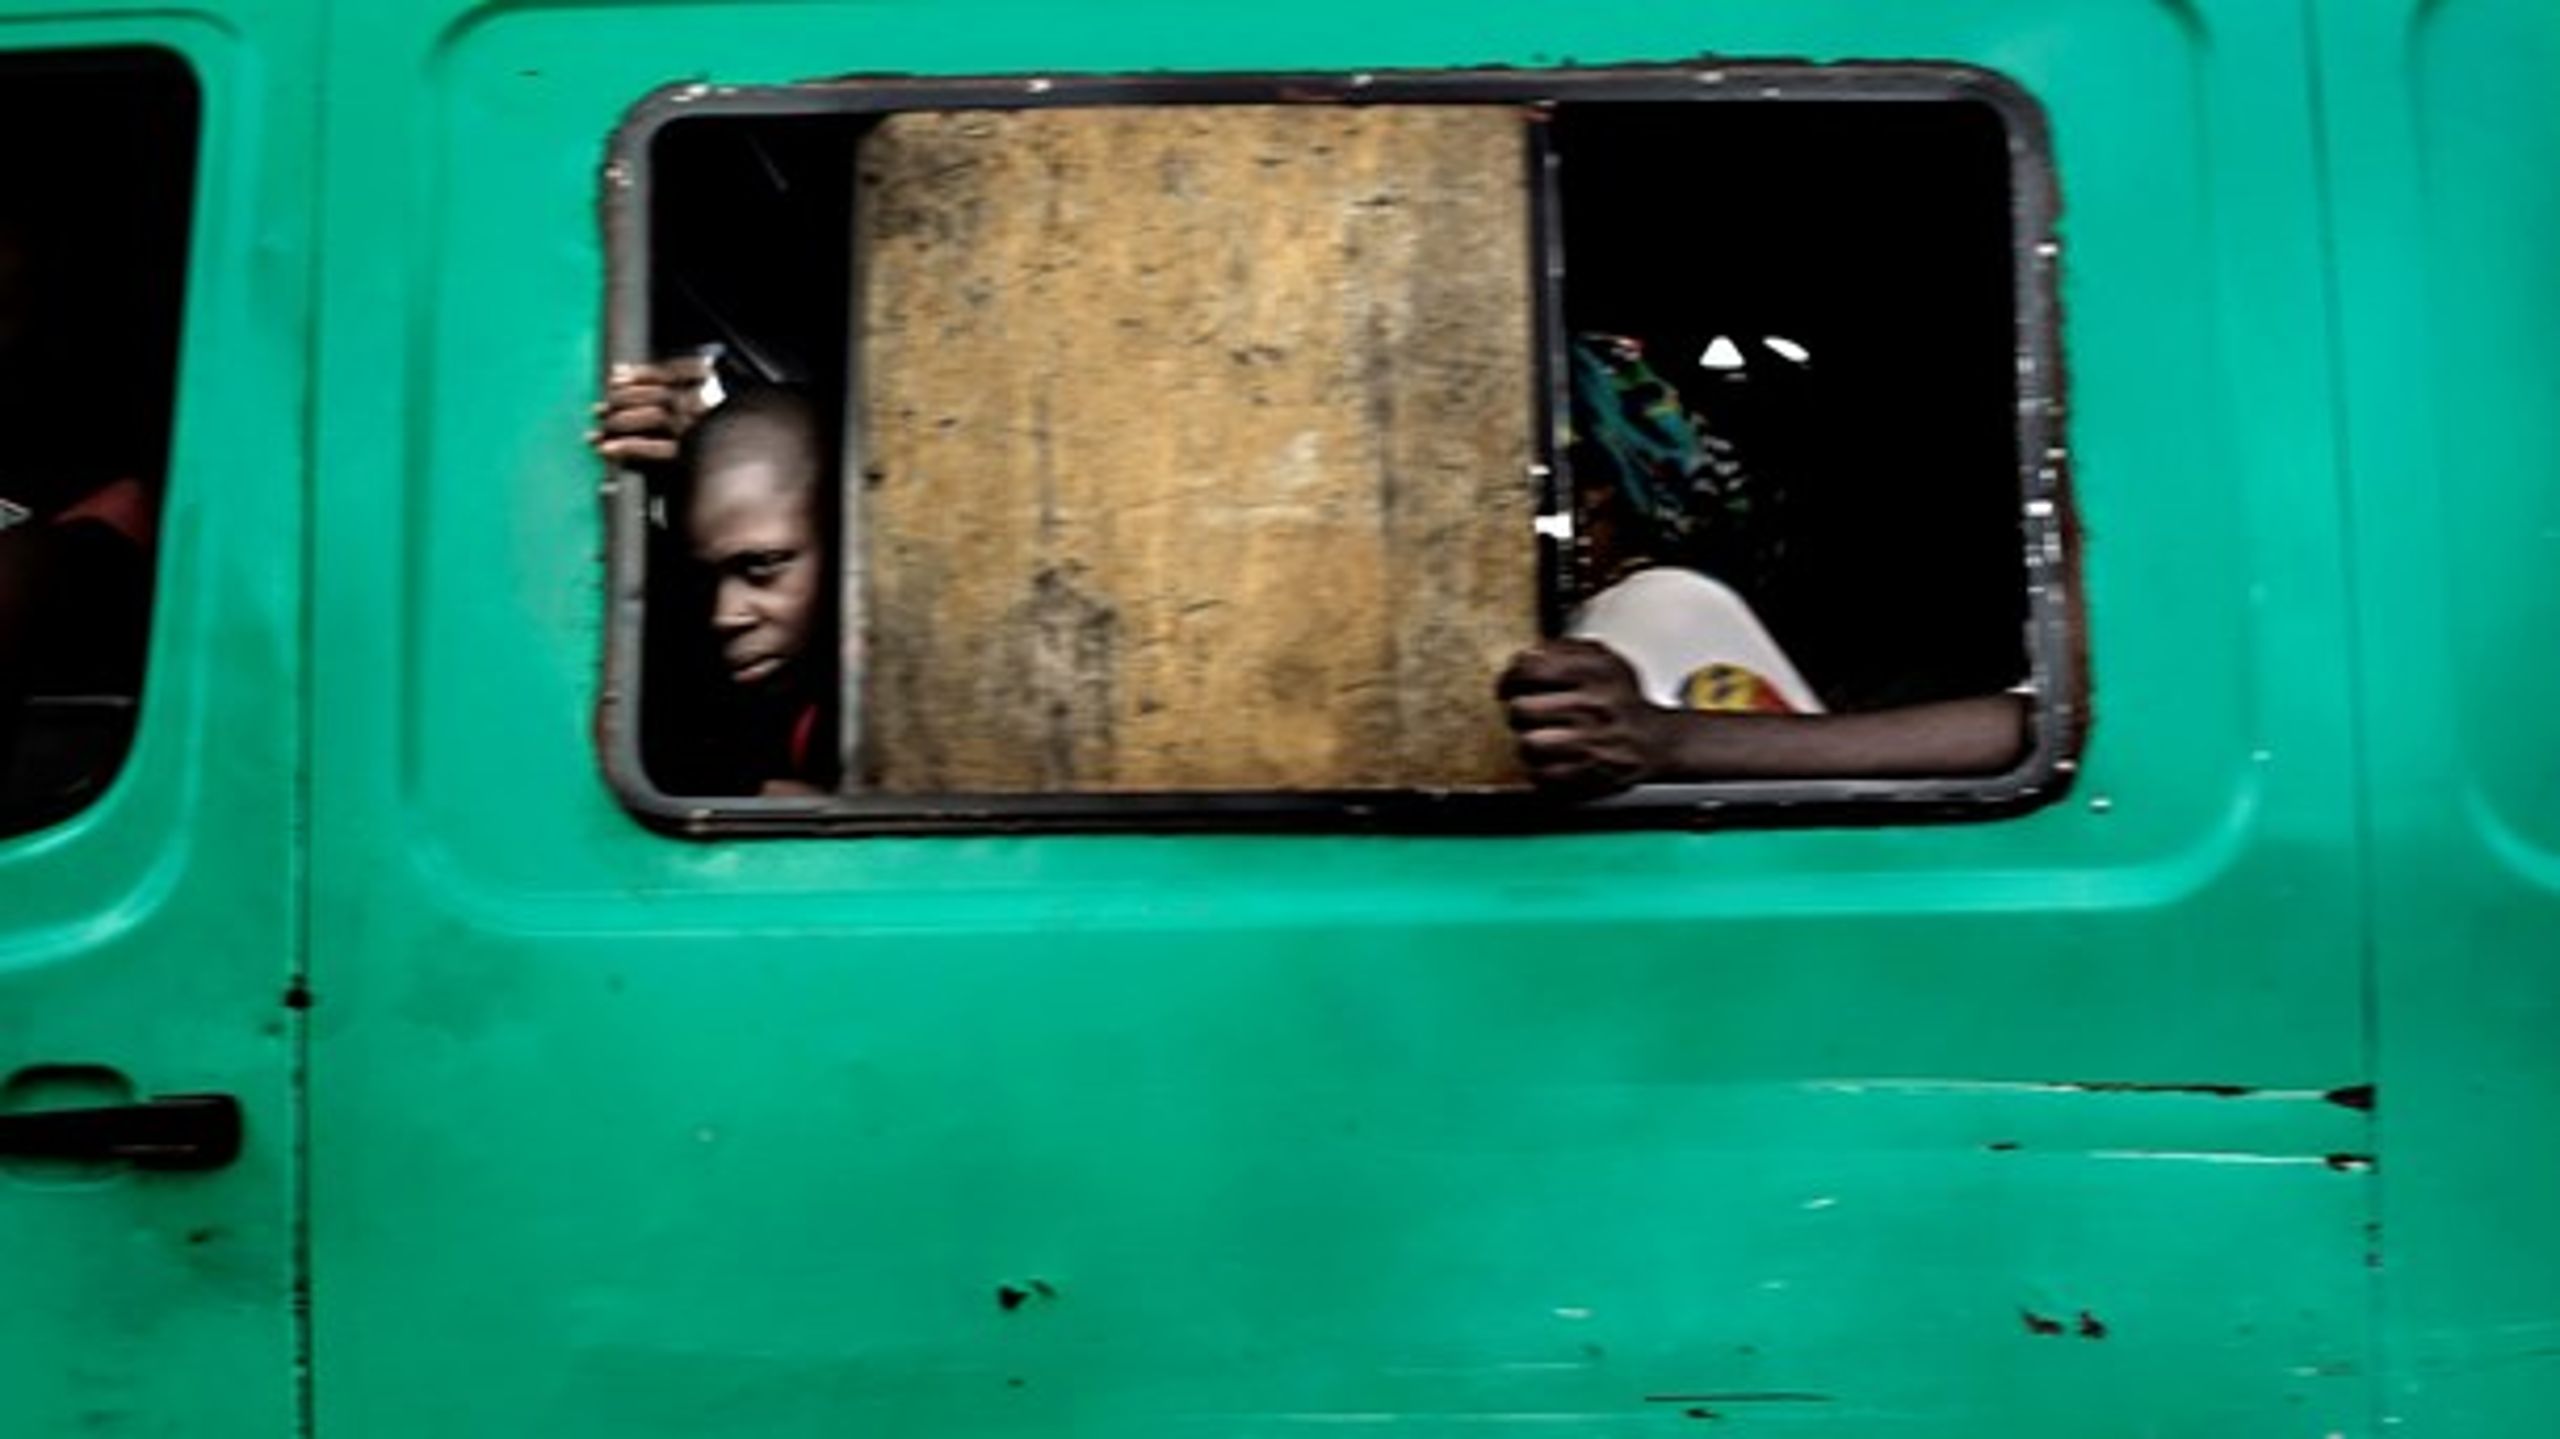 EFFEKT: En del af udviklingsbistandsmidlerne bliver brugt til at måle og dokumentere effekten af hjælp til ulandene. På fotoet ses offentlig transport i hovedstaden Kinshasa i&nbsp;et af verdens fattigste lande, DR Congo.&nbsp;<br>